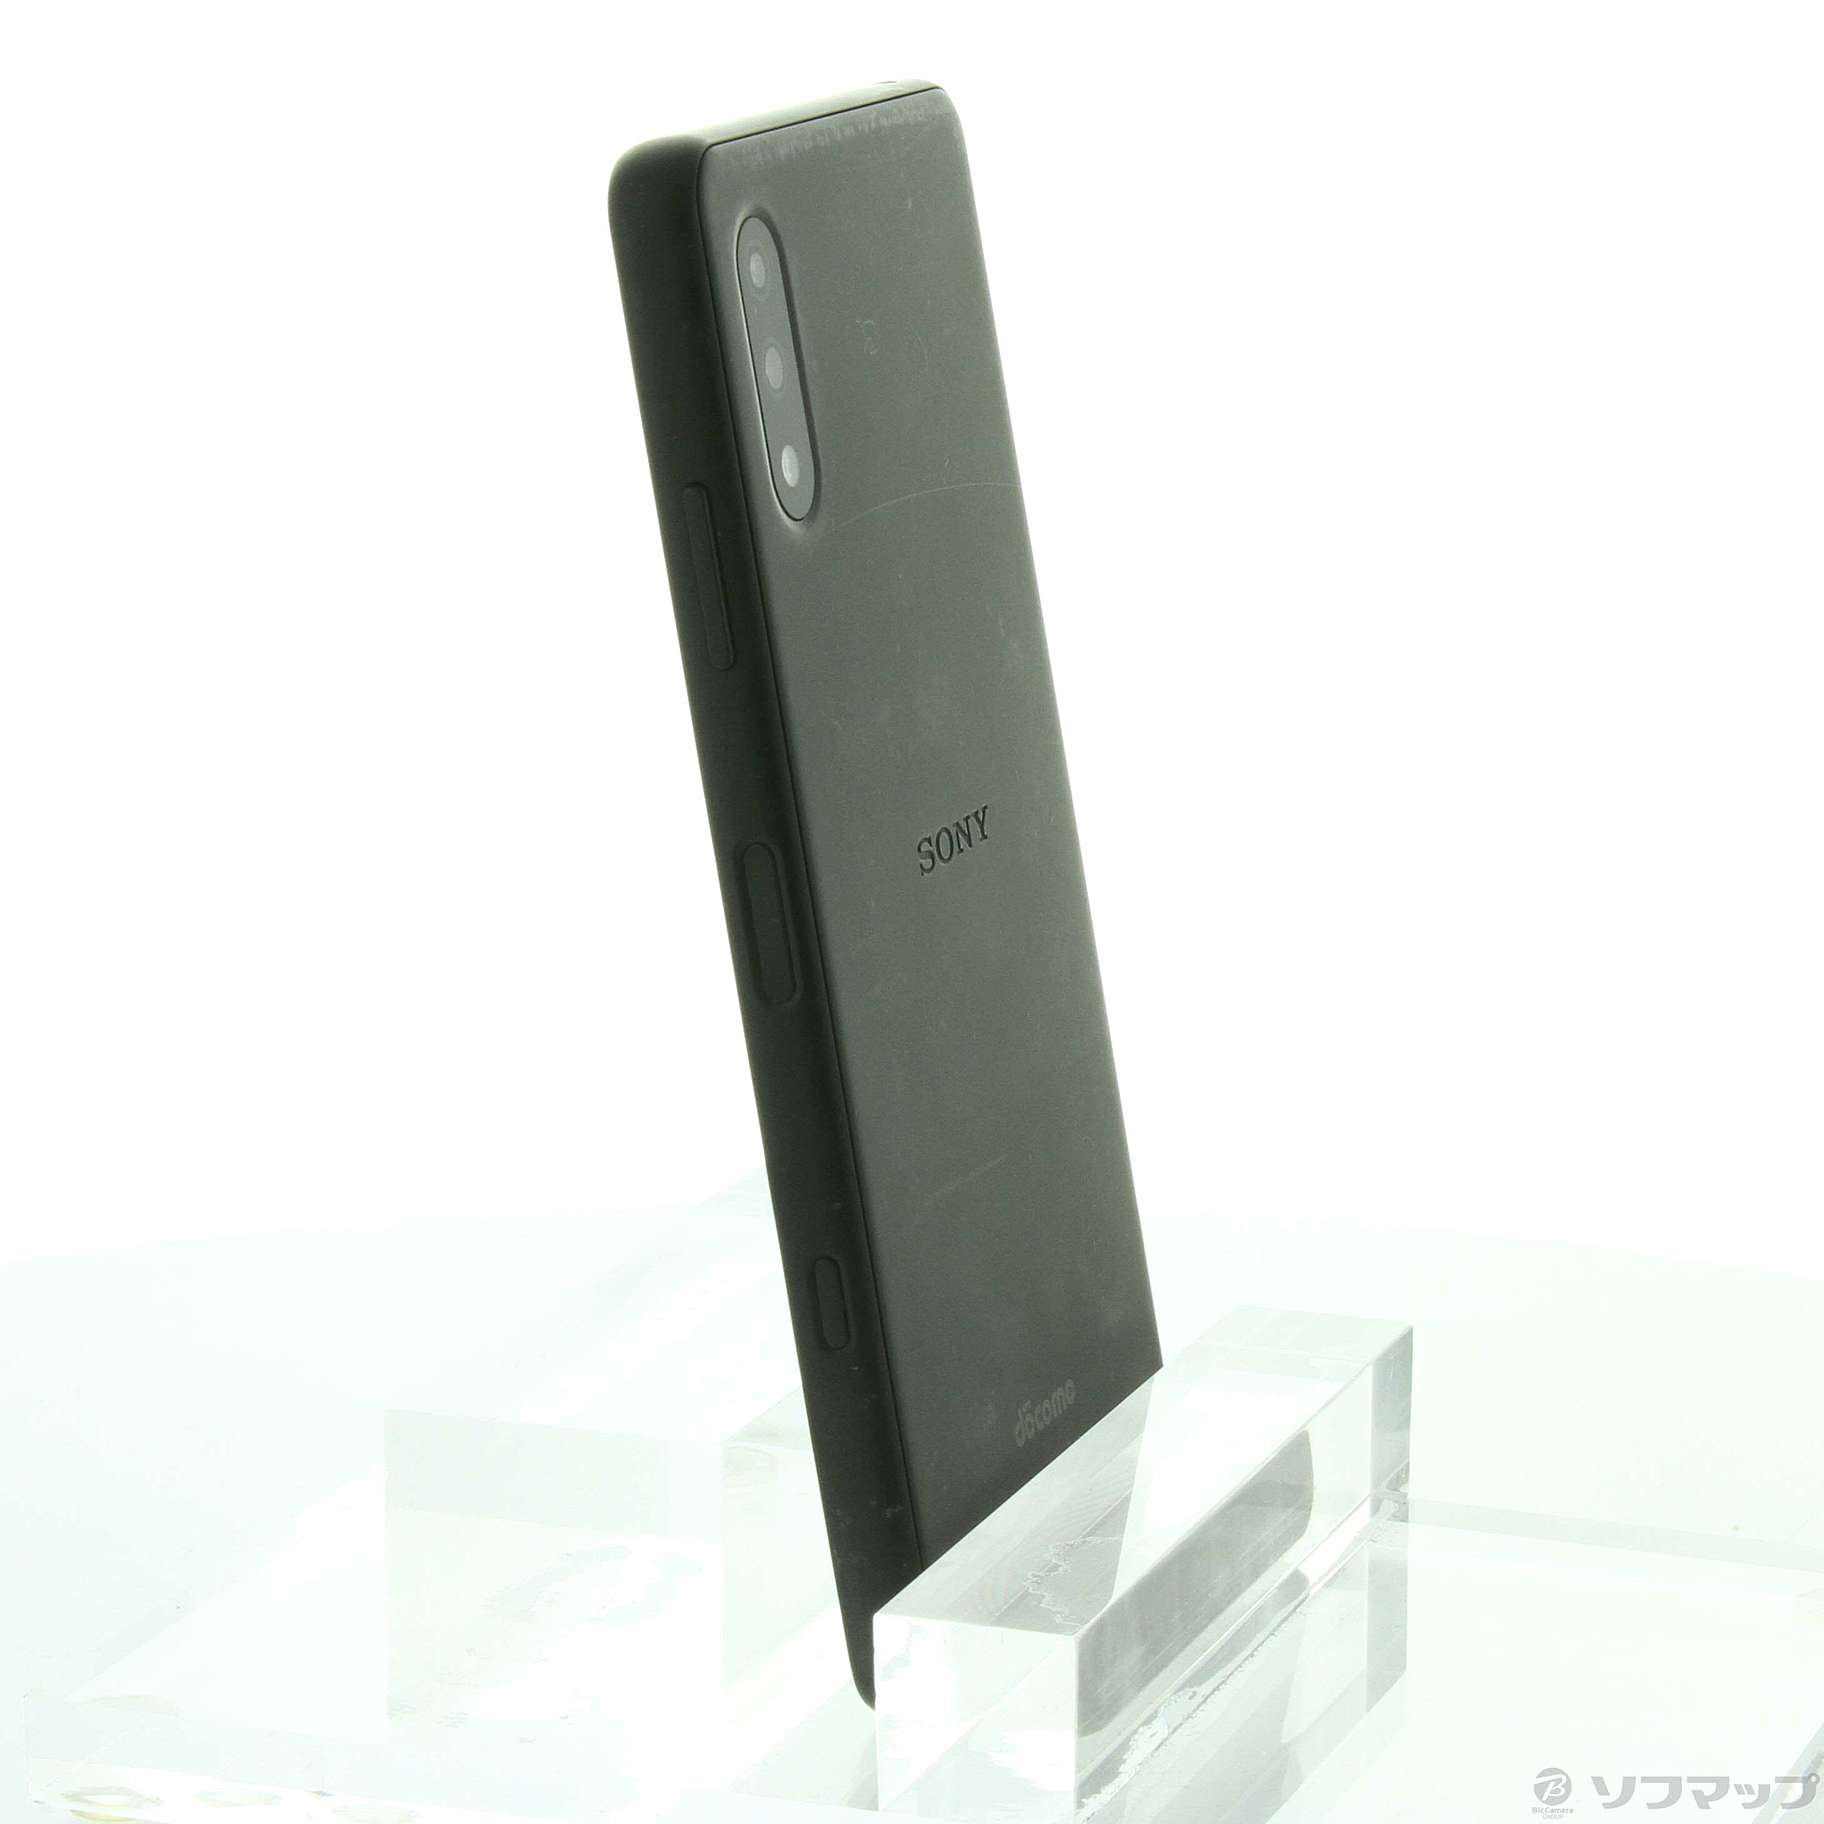 中古】Xperia Ace II 64GB ブラック SO-41B docomoロック解除SIMフリー 